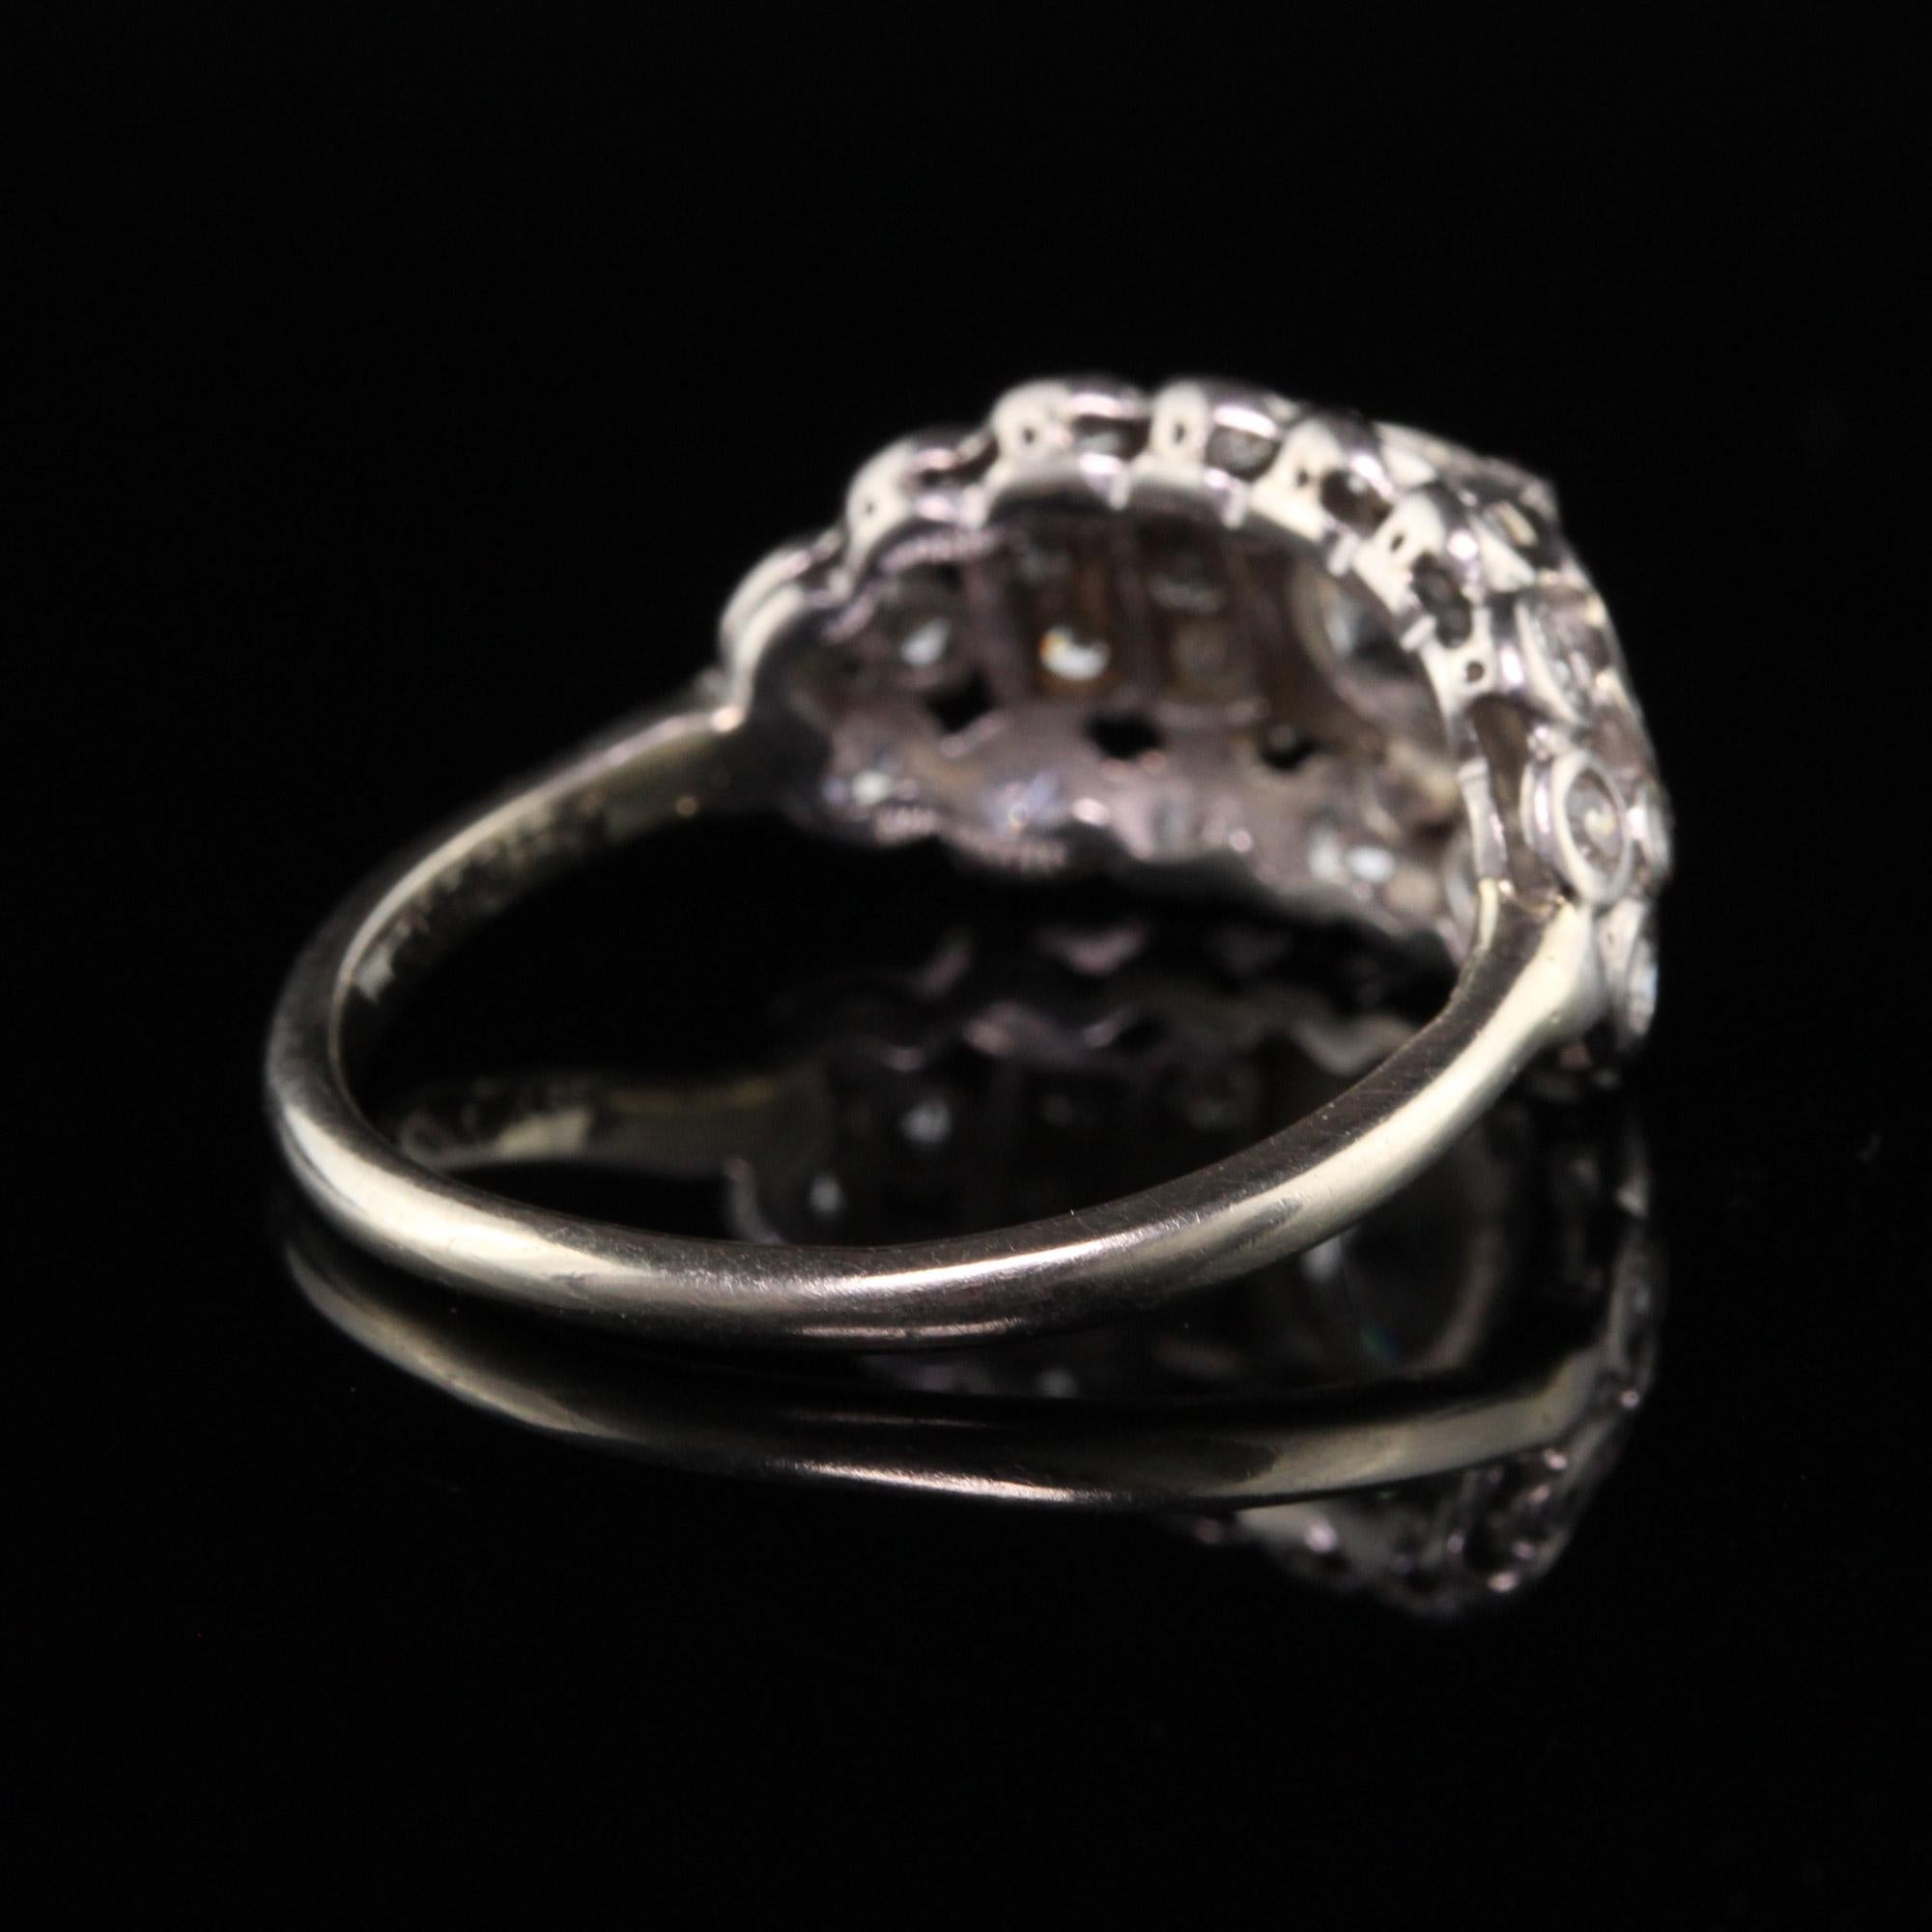 Women's Antique Art Deco Platinum Old European Cut Diamond Engagement Ring